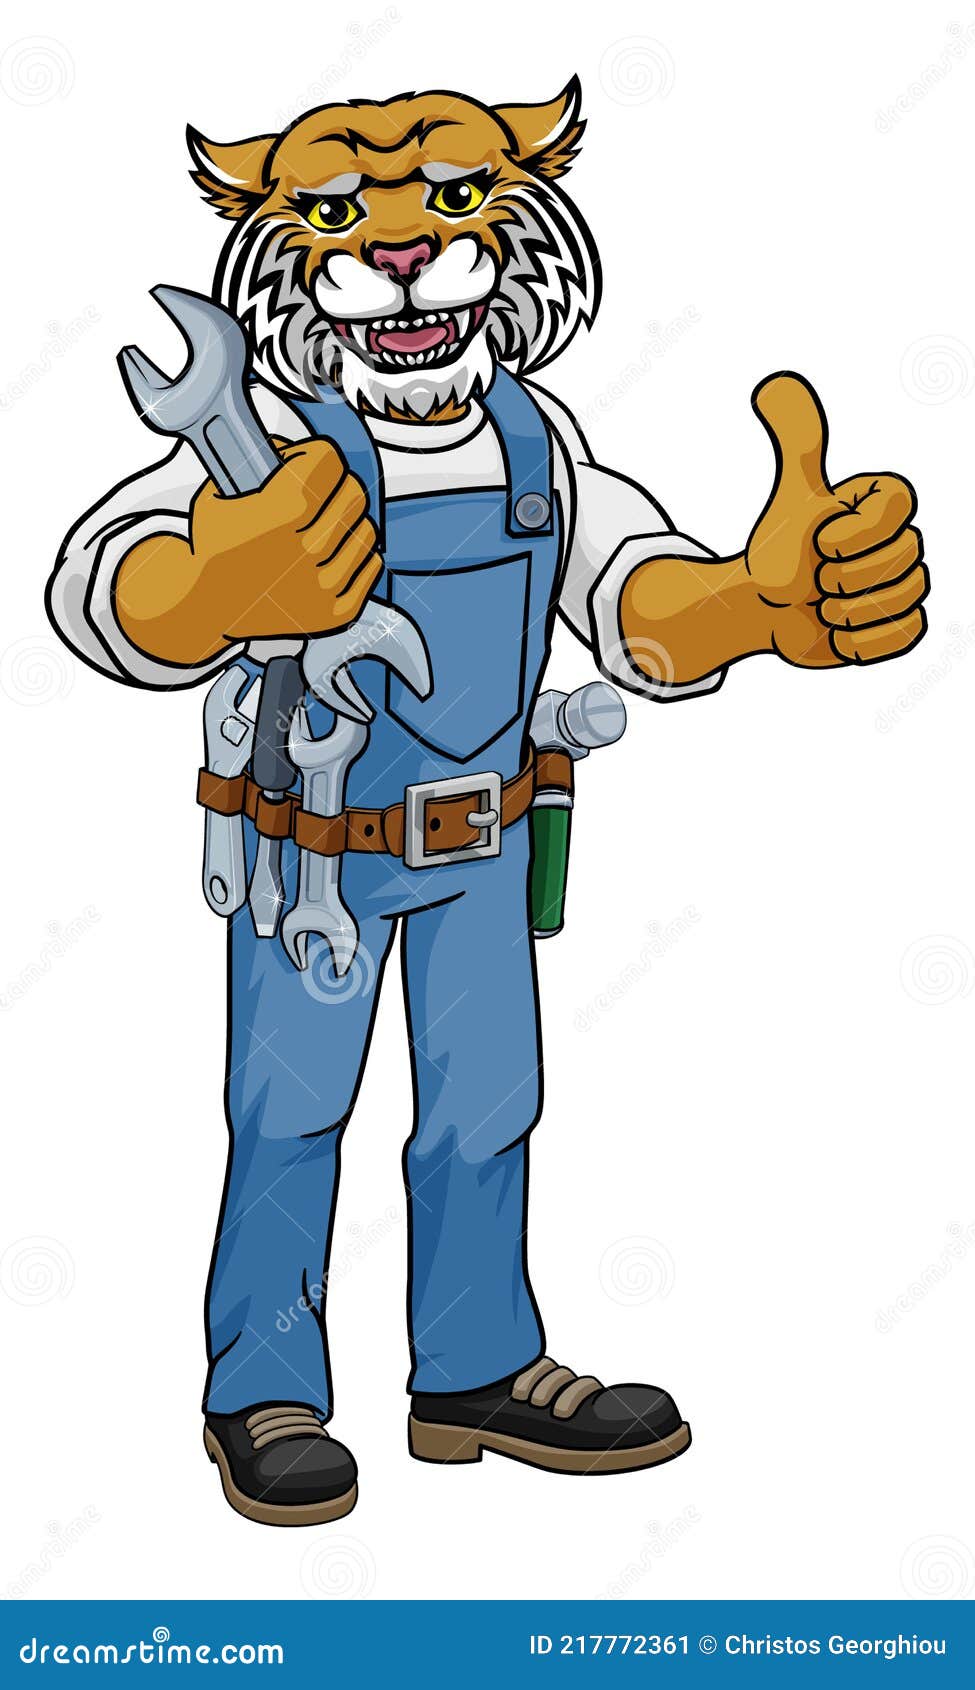 wildcat plumber or mechanic holding spanner